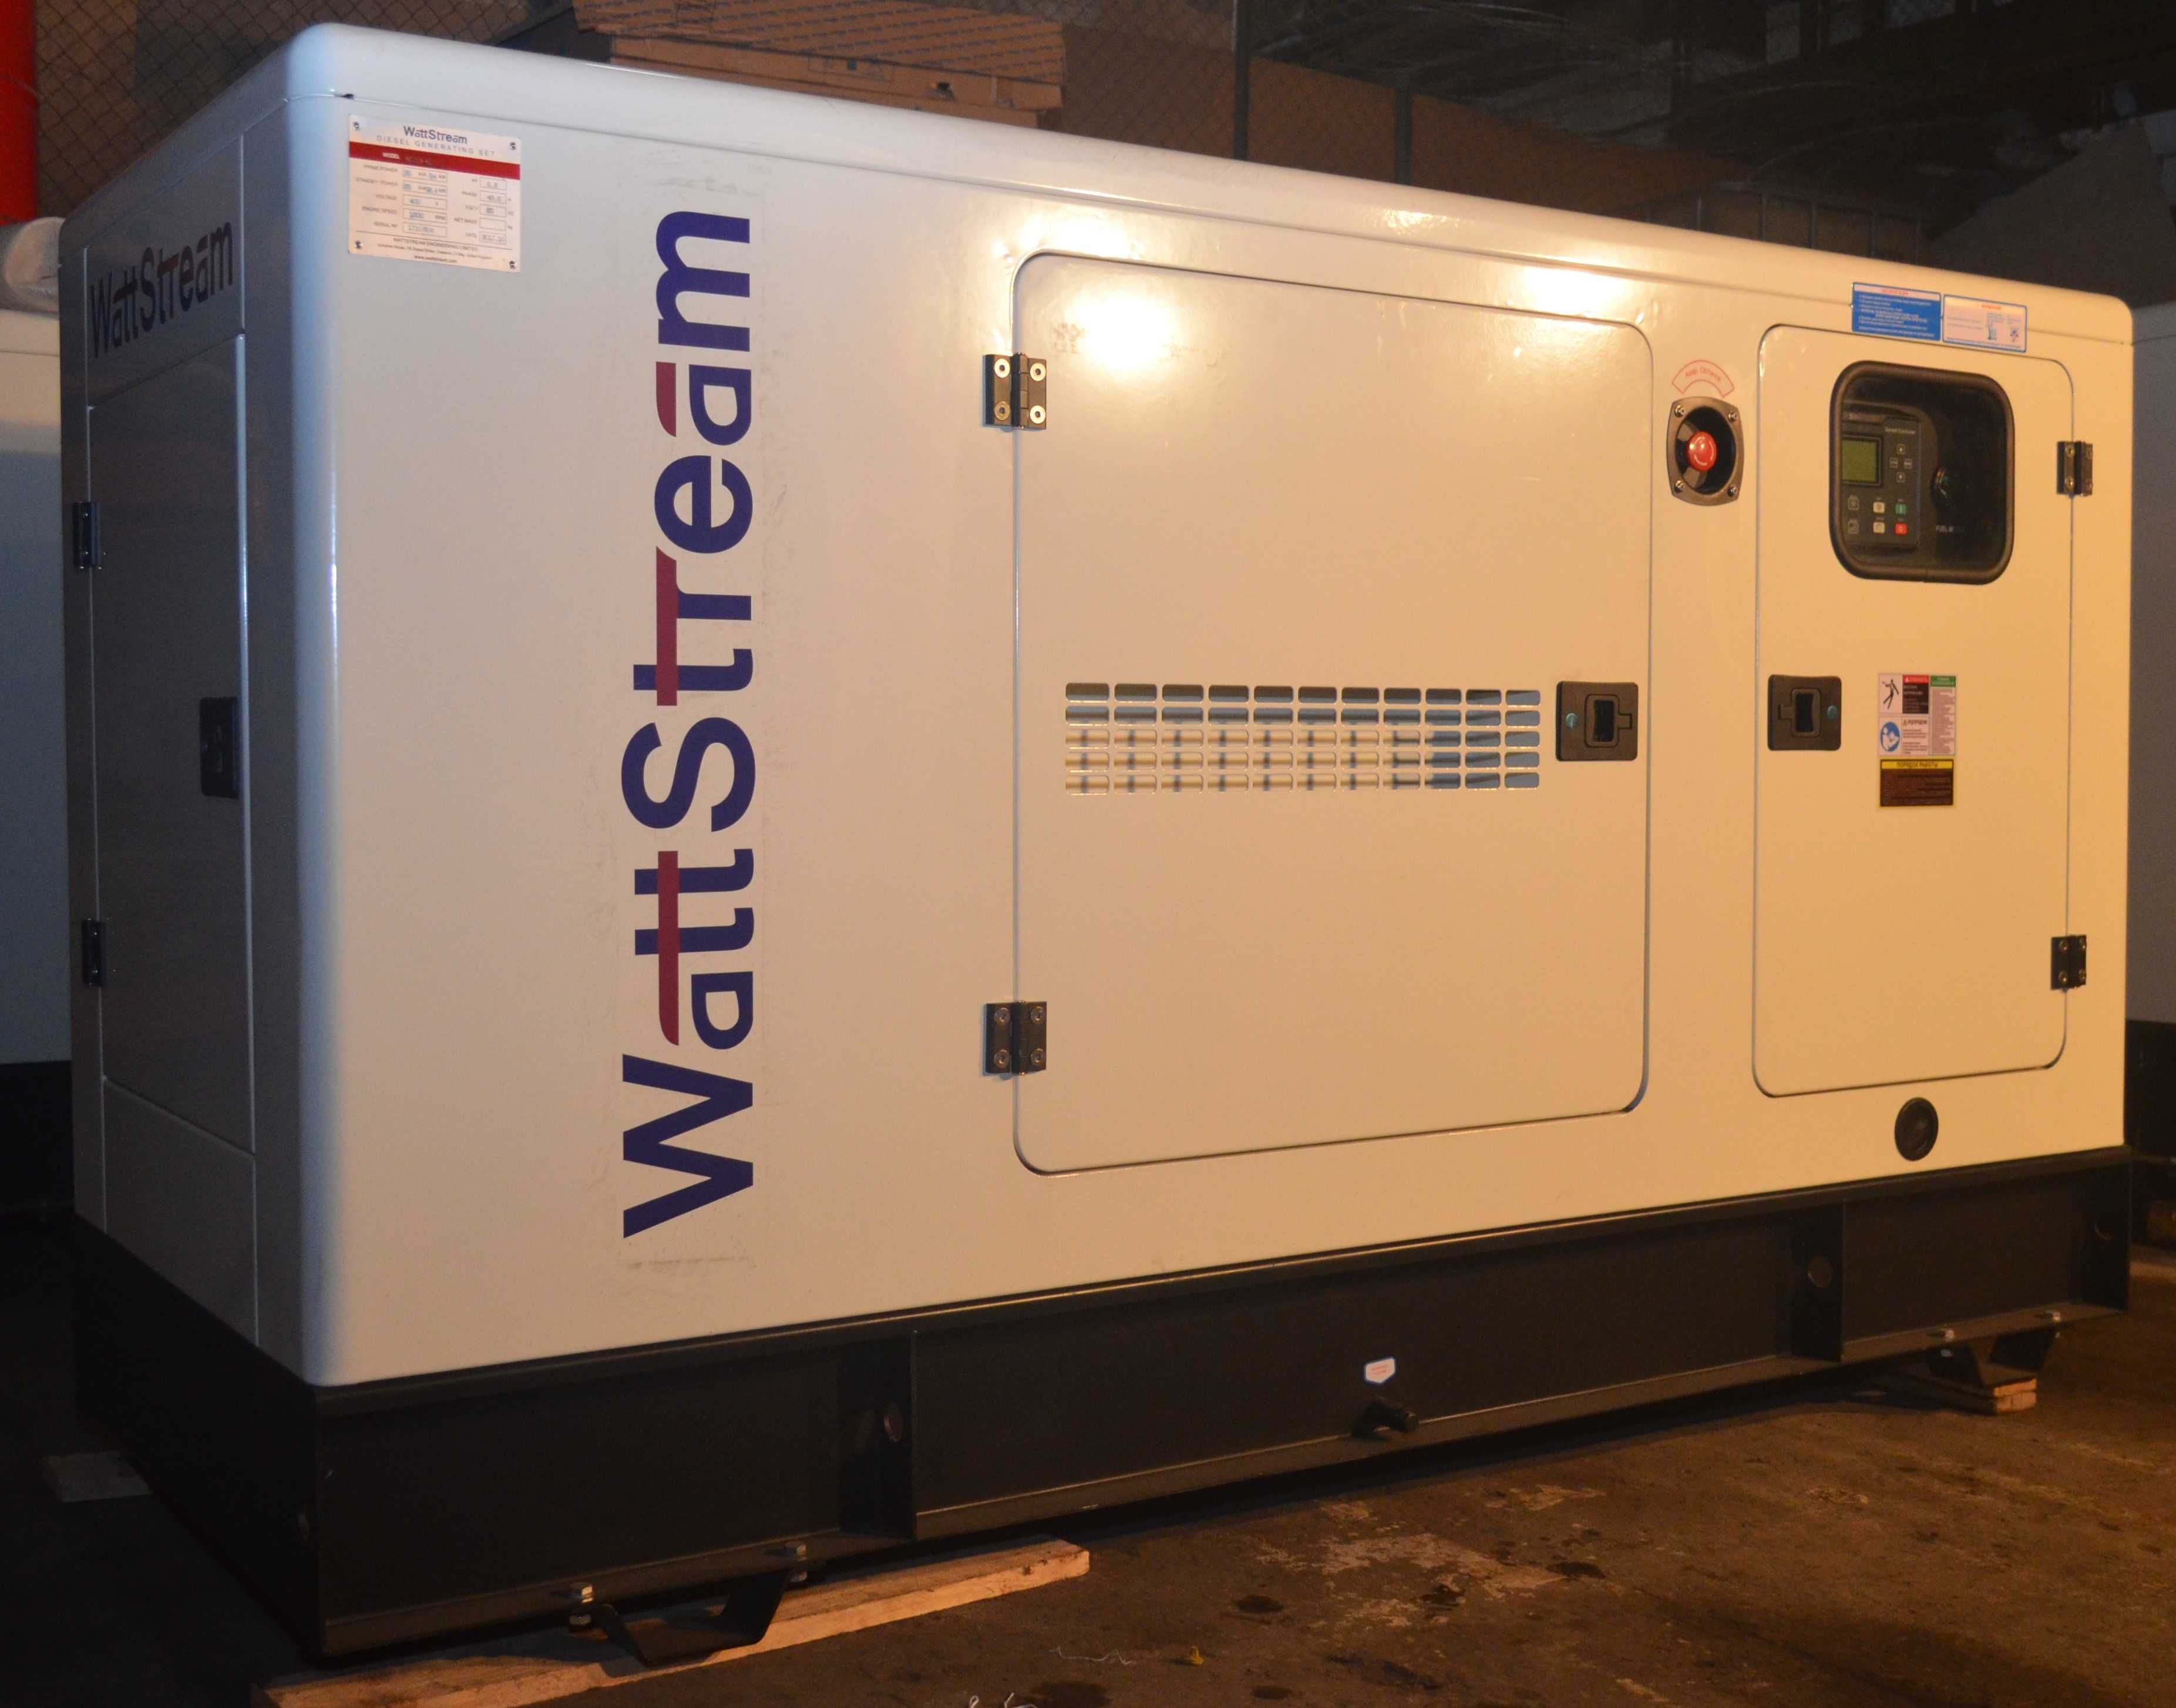 Промышленные дизельные генераторы WattStream Великобритания